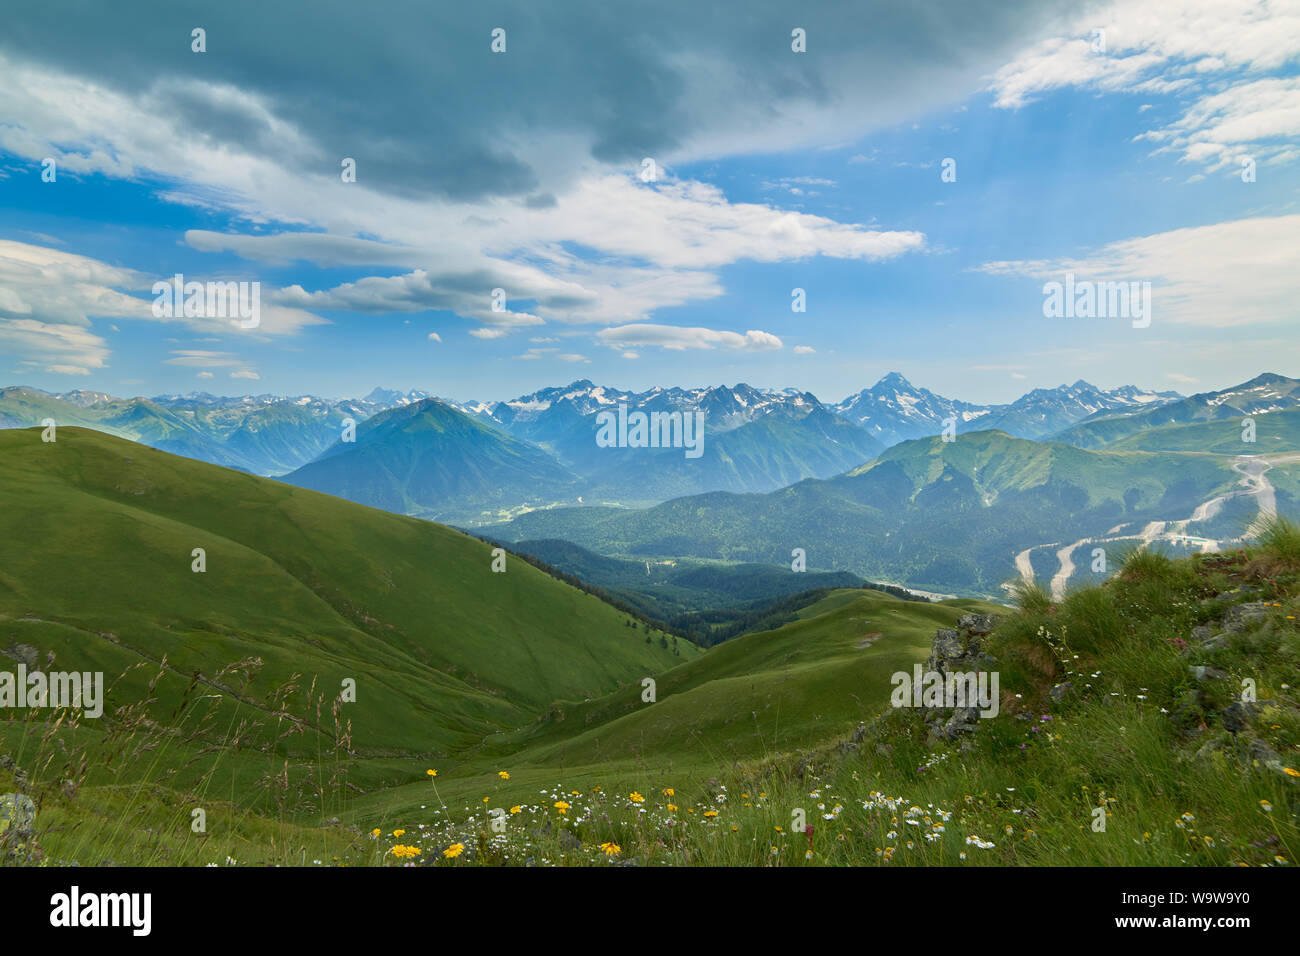 Fleurs roses et jaunes sur fond de montagnes enneigées Arkhyz Caucase du Nord Russie Banque D'Images